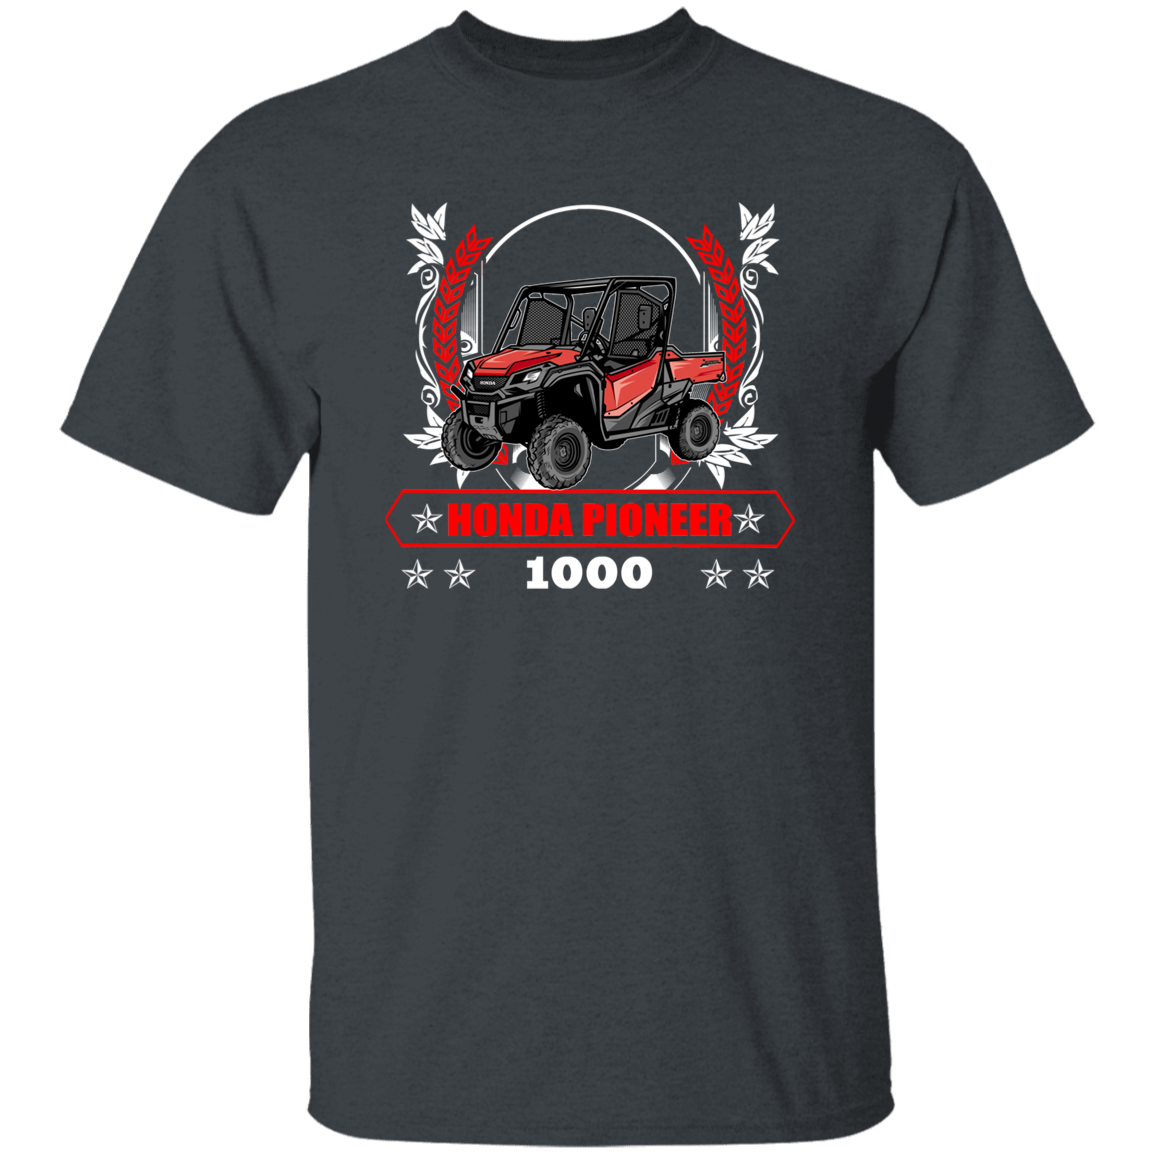 G500 5.3 oz. T-Shirt